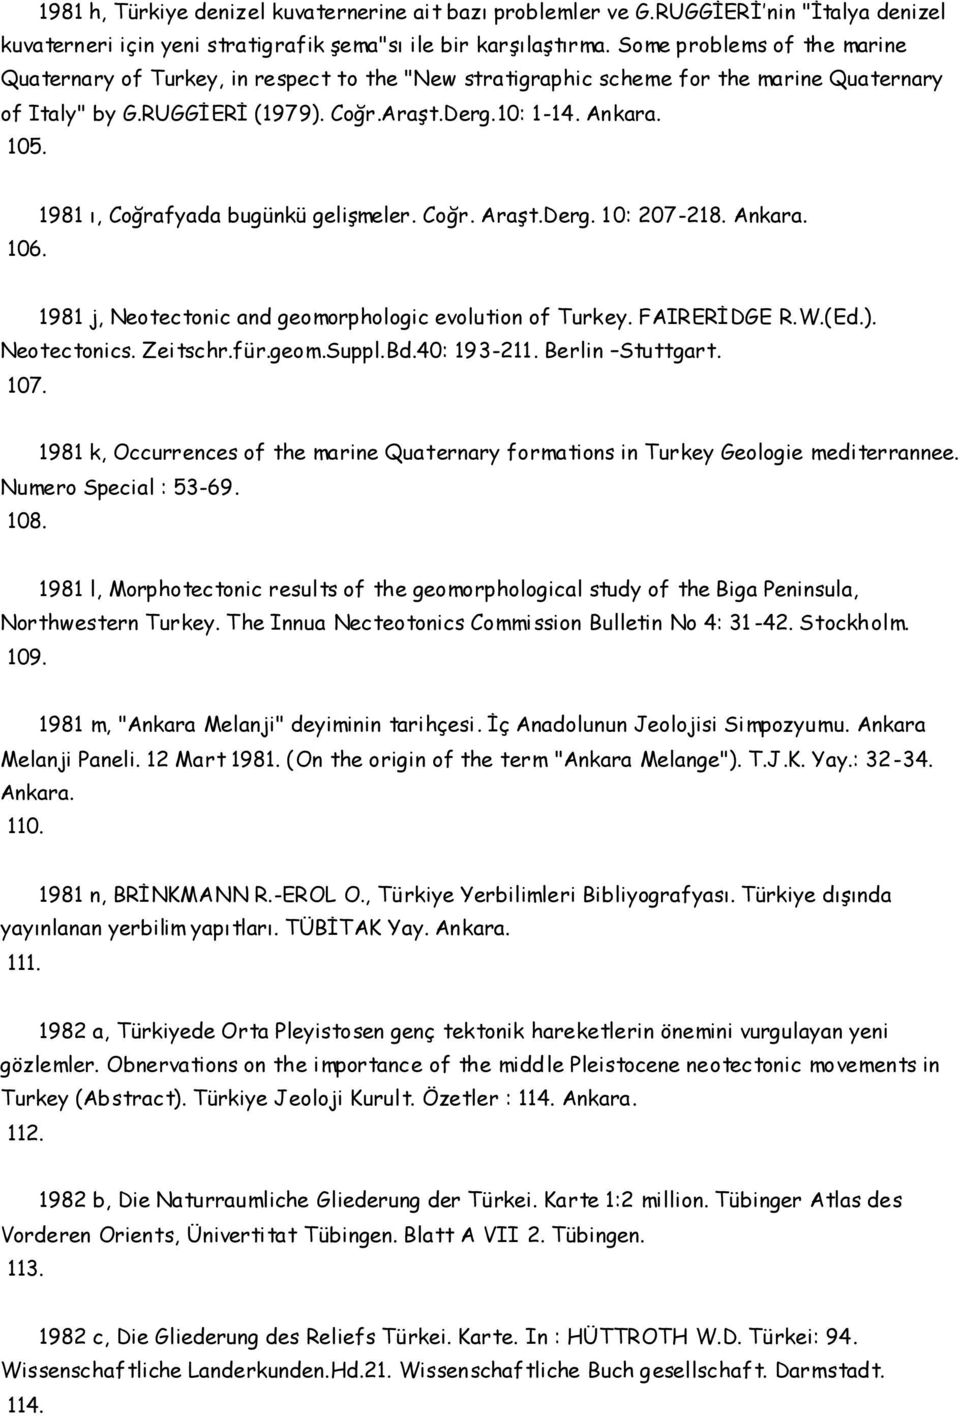 1981 ı, Coğrafyada bugünkü gelişmeler. Coğr. Araşt.Derg. 10: 207-218. Ankara. 1981 j, Neotectonic and geomorphologic evolution of Turkey. FAIRERİDGE R.W.(Ed.). Neotectonics. Zeitschr.für.geom.Suppl.